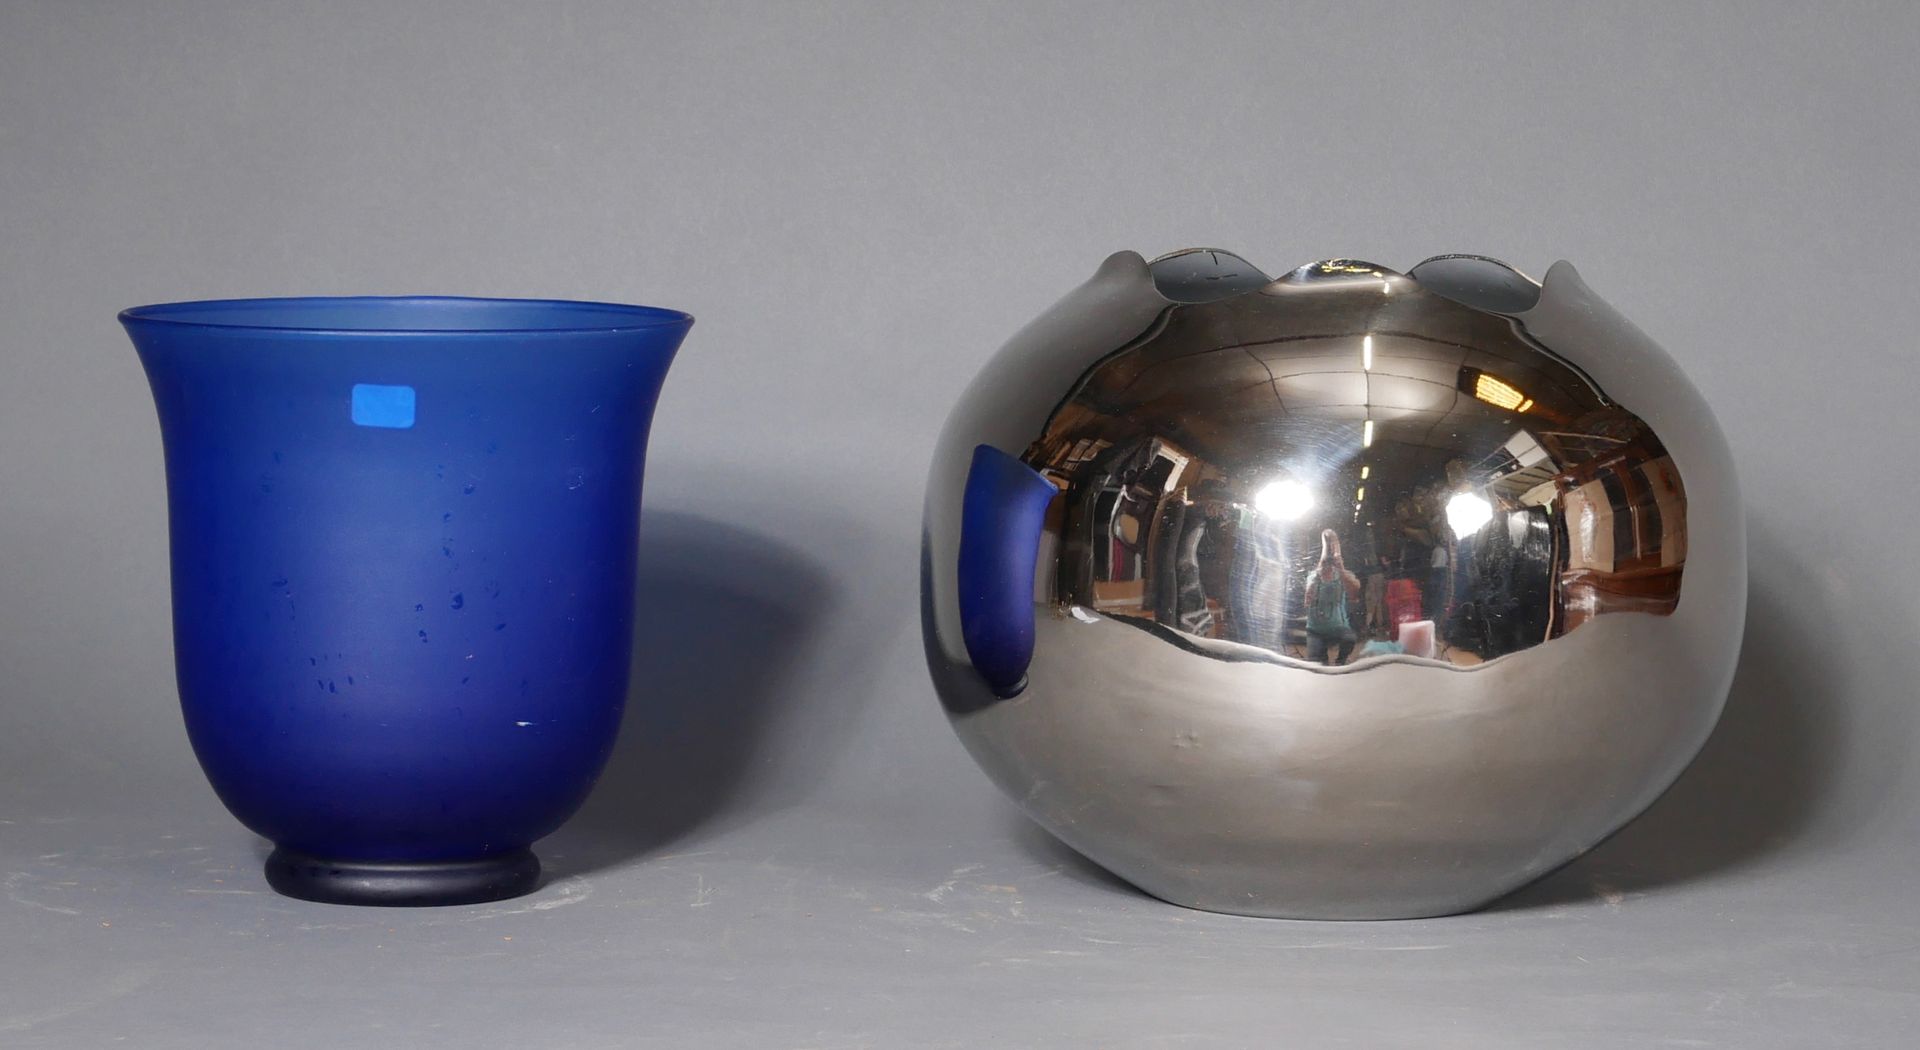 Null Due coprivasi in metallo e vetro colorato blu

H: 22-25 cm.